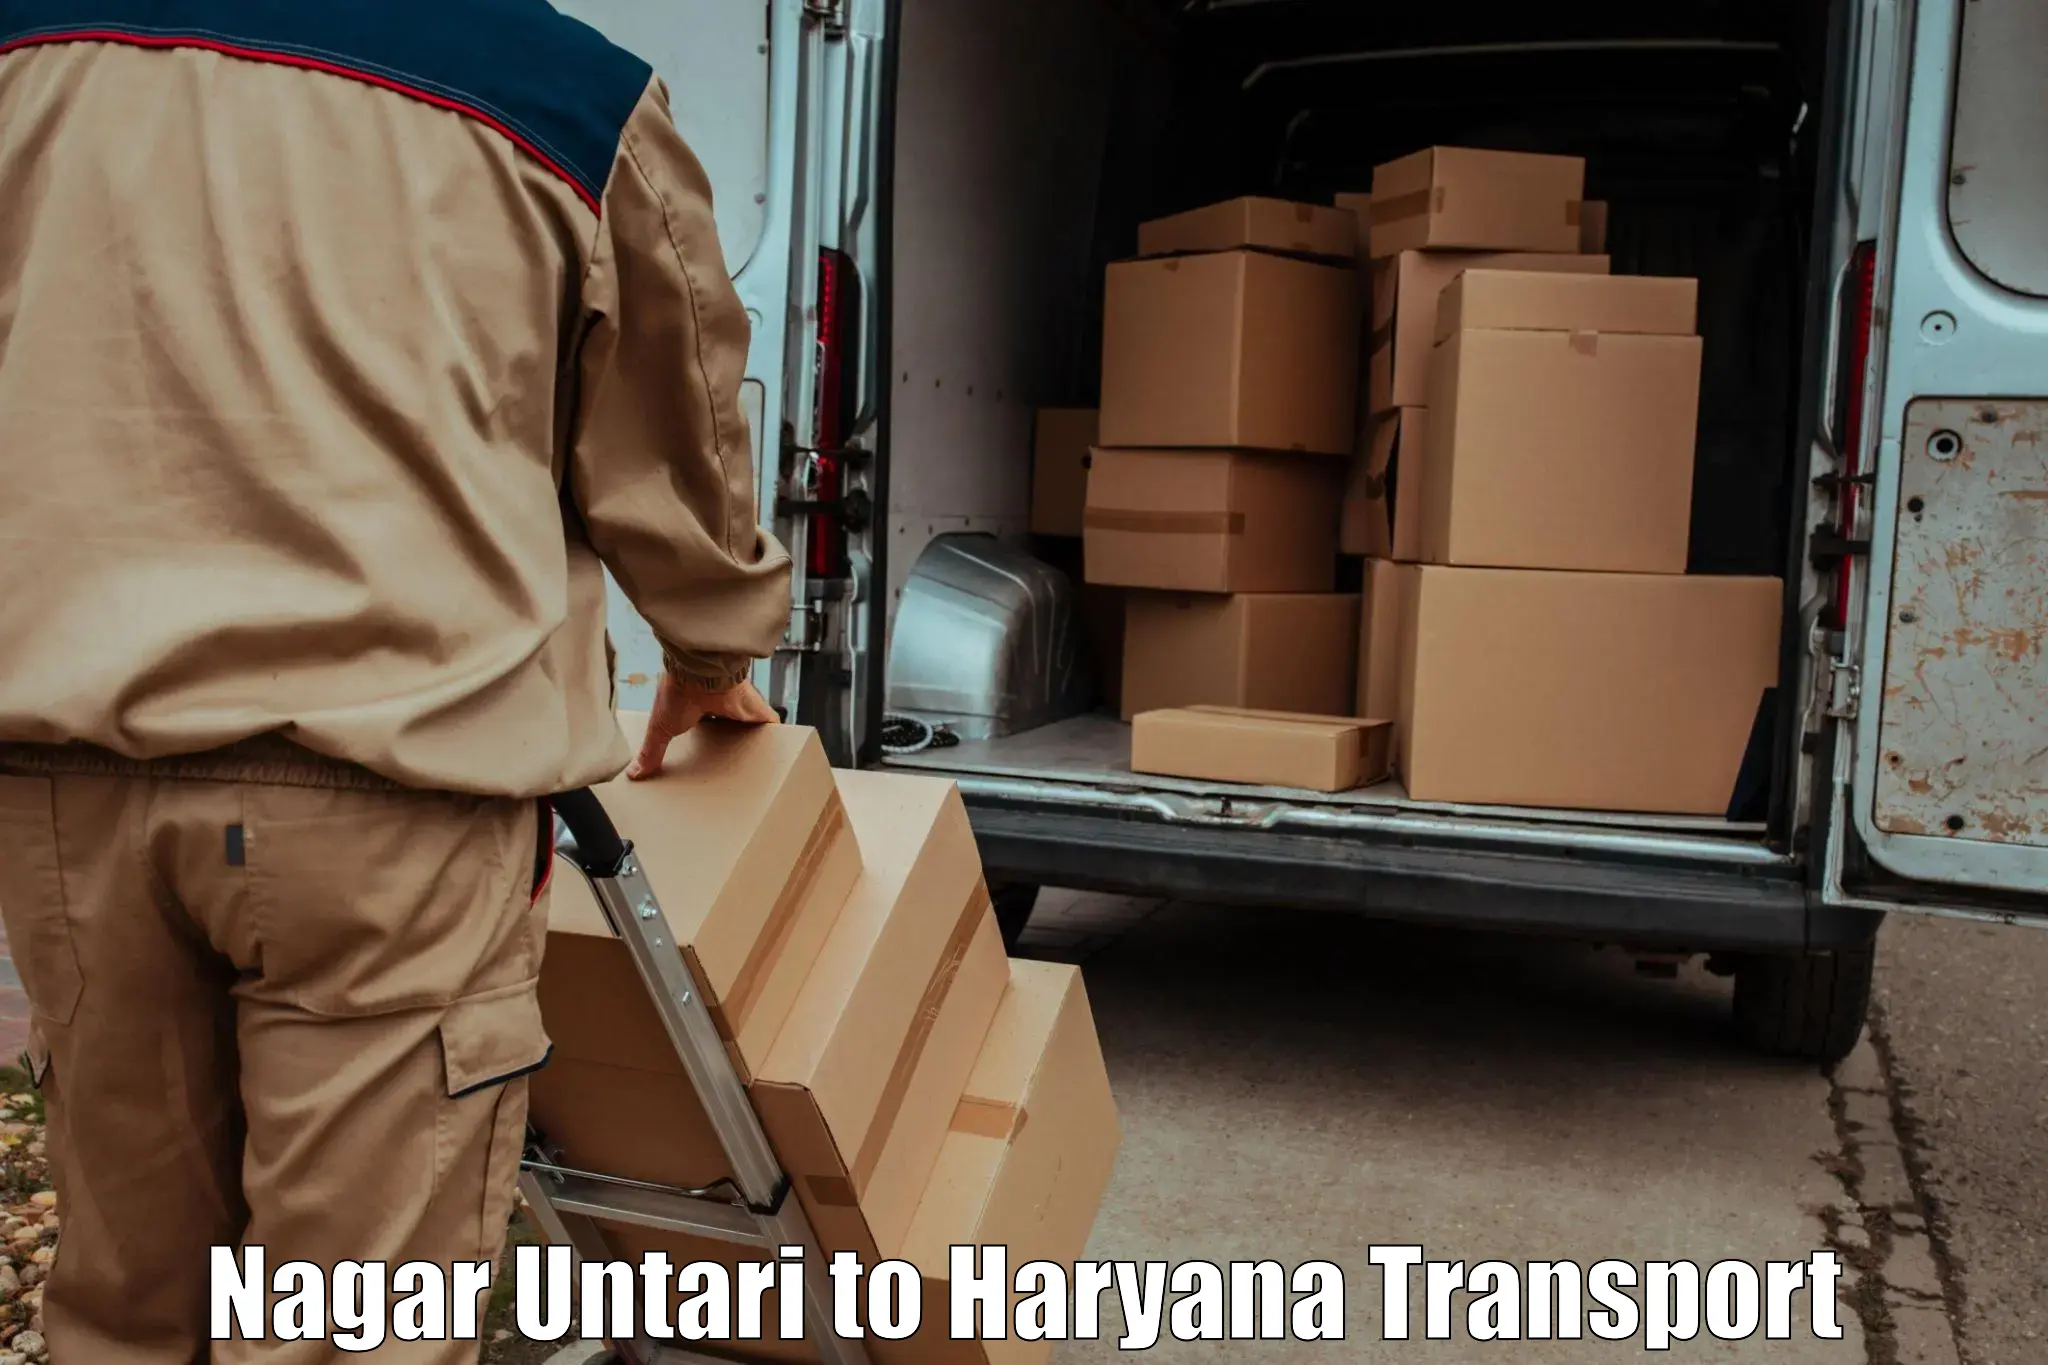 Furniture transport service Nagar Untari to Sirsa